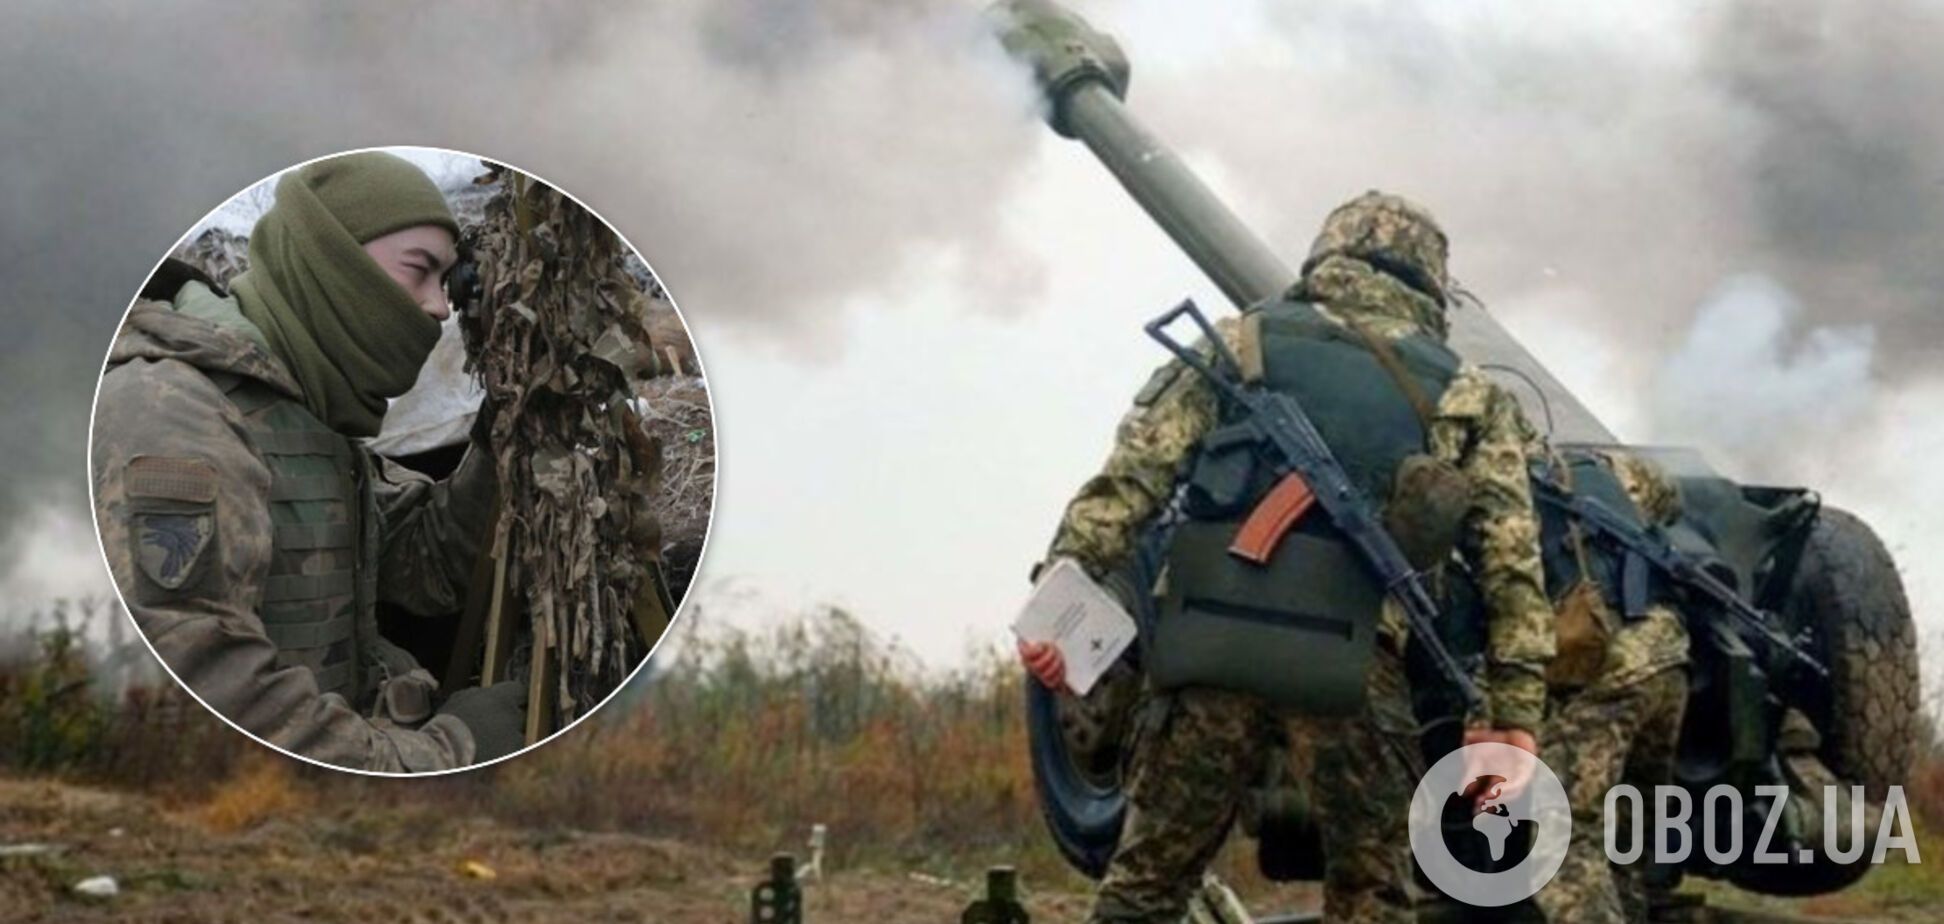 Найманці Путіна нахабно атакували бійців ЗСУ на Донбасі й отримали відсіч